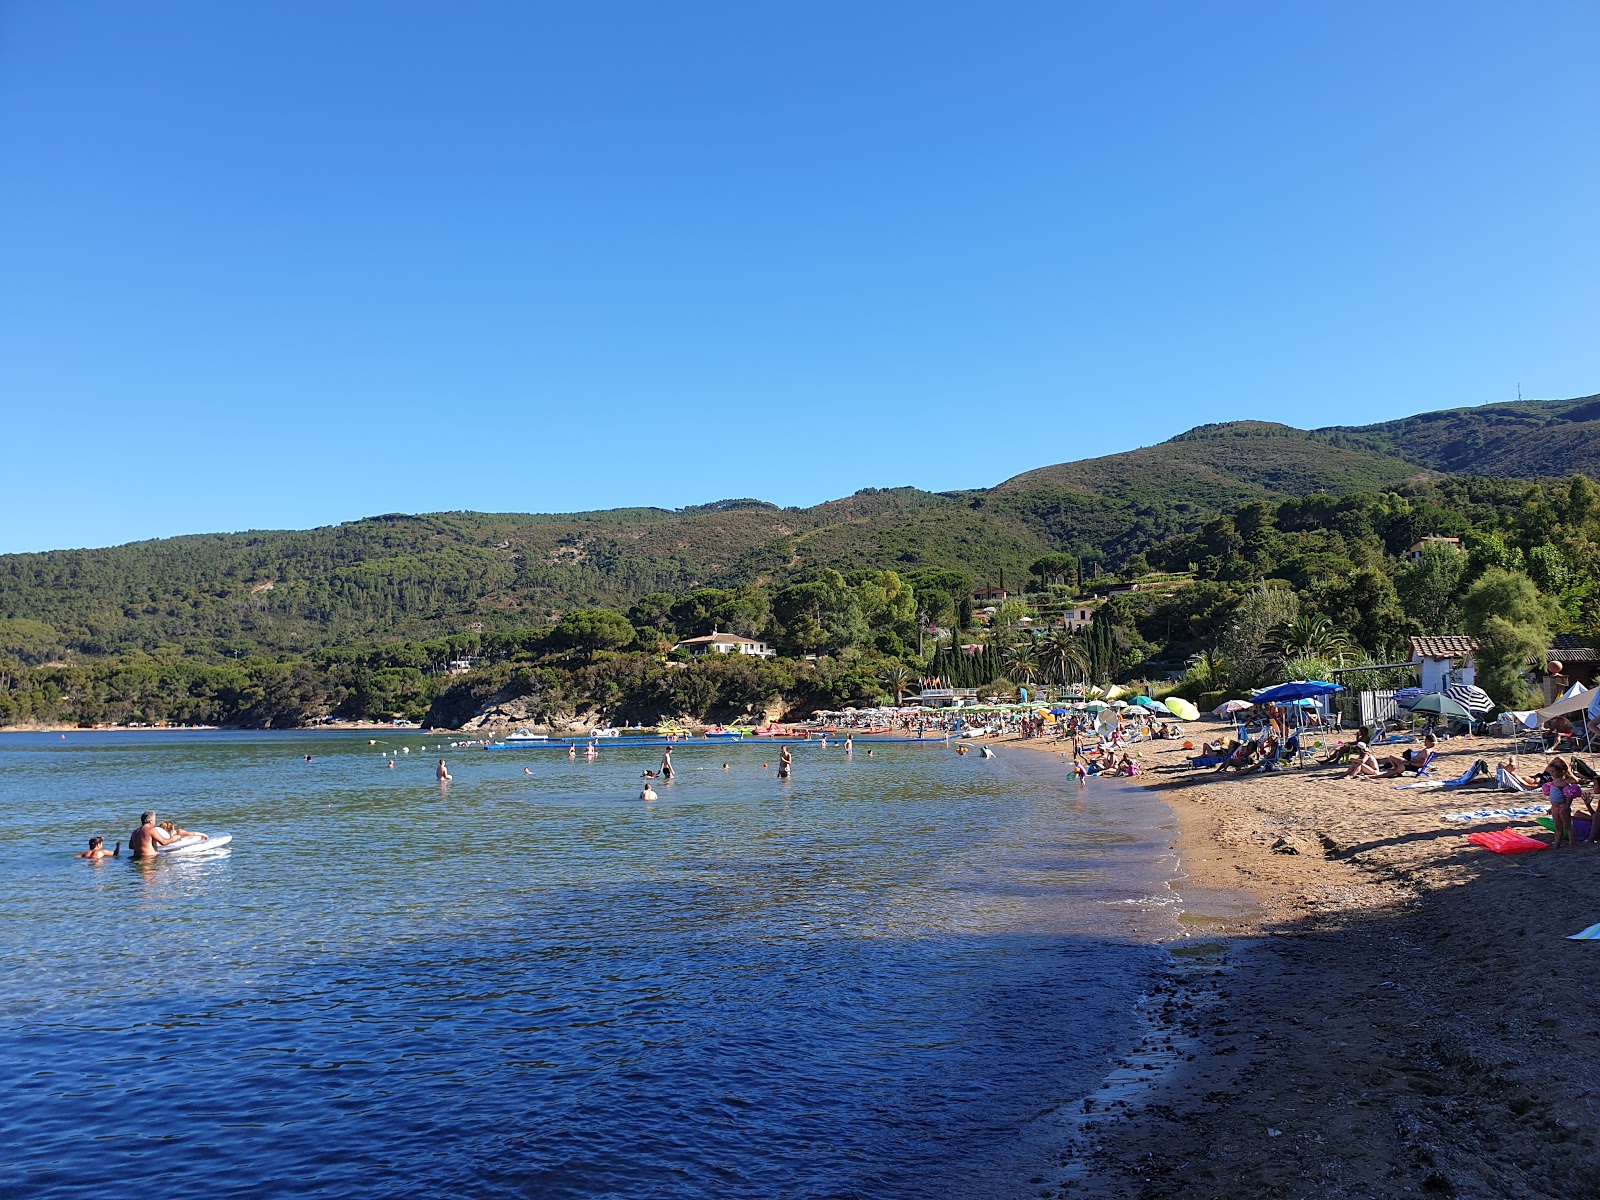 Straccoligno beach'in fotoğrafı geniş ile birlikte